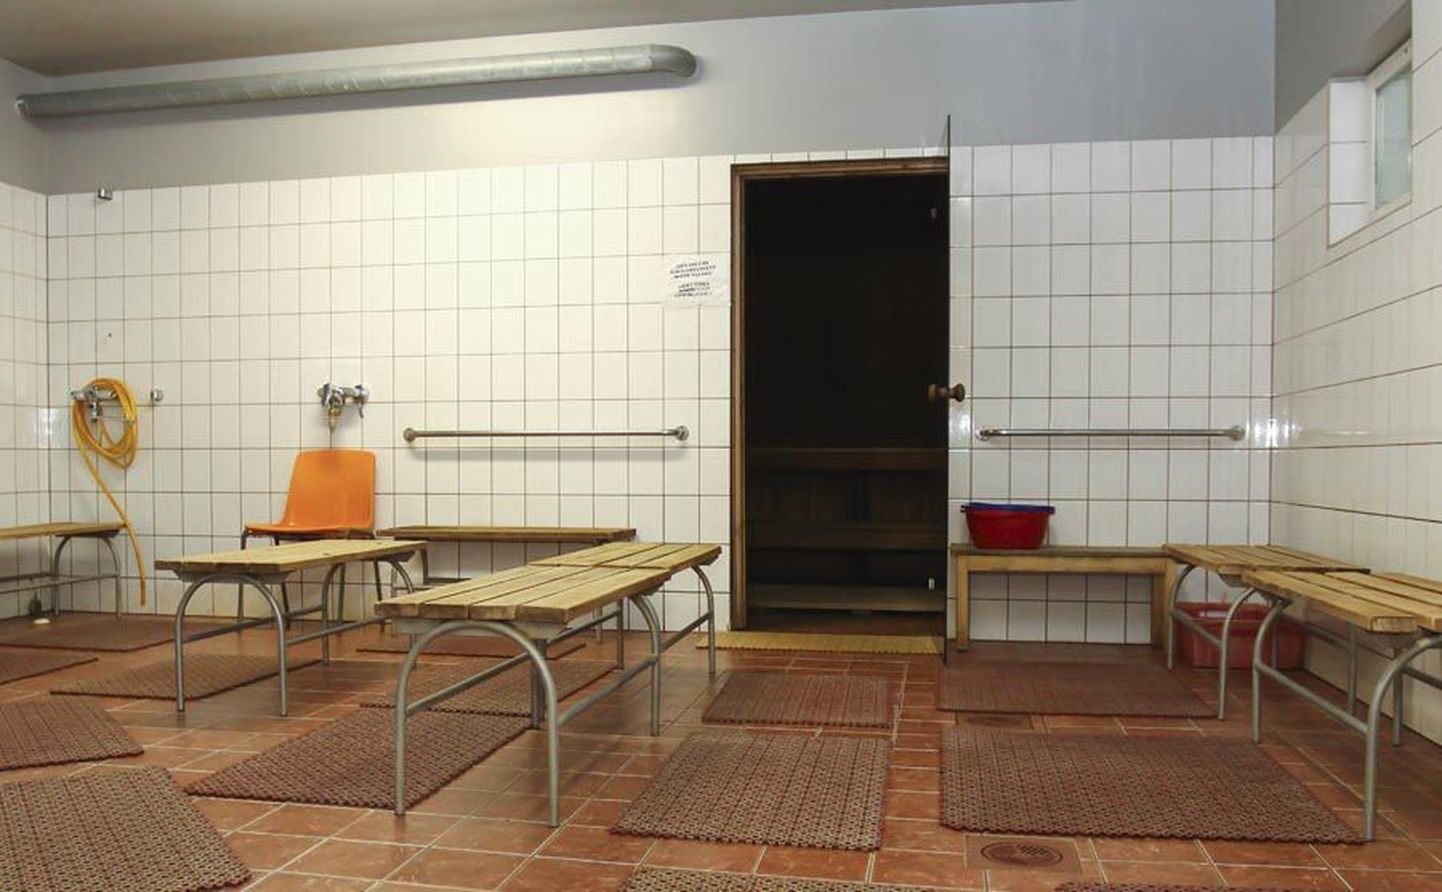 Osaühingule Ingeri Haldus kuuluvas saunas käisid eelmise aasta lõpuni päevakeskuse kliendid. Kuu lõpuni, kui linnasauna uuendatakse, saavad seda kasutada teisedki linlased.